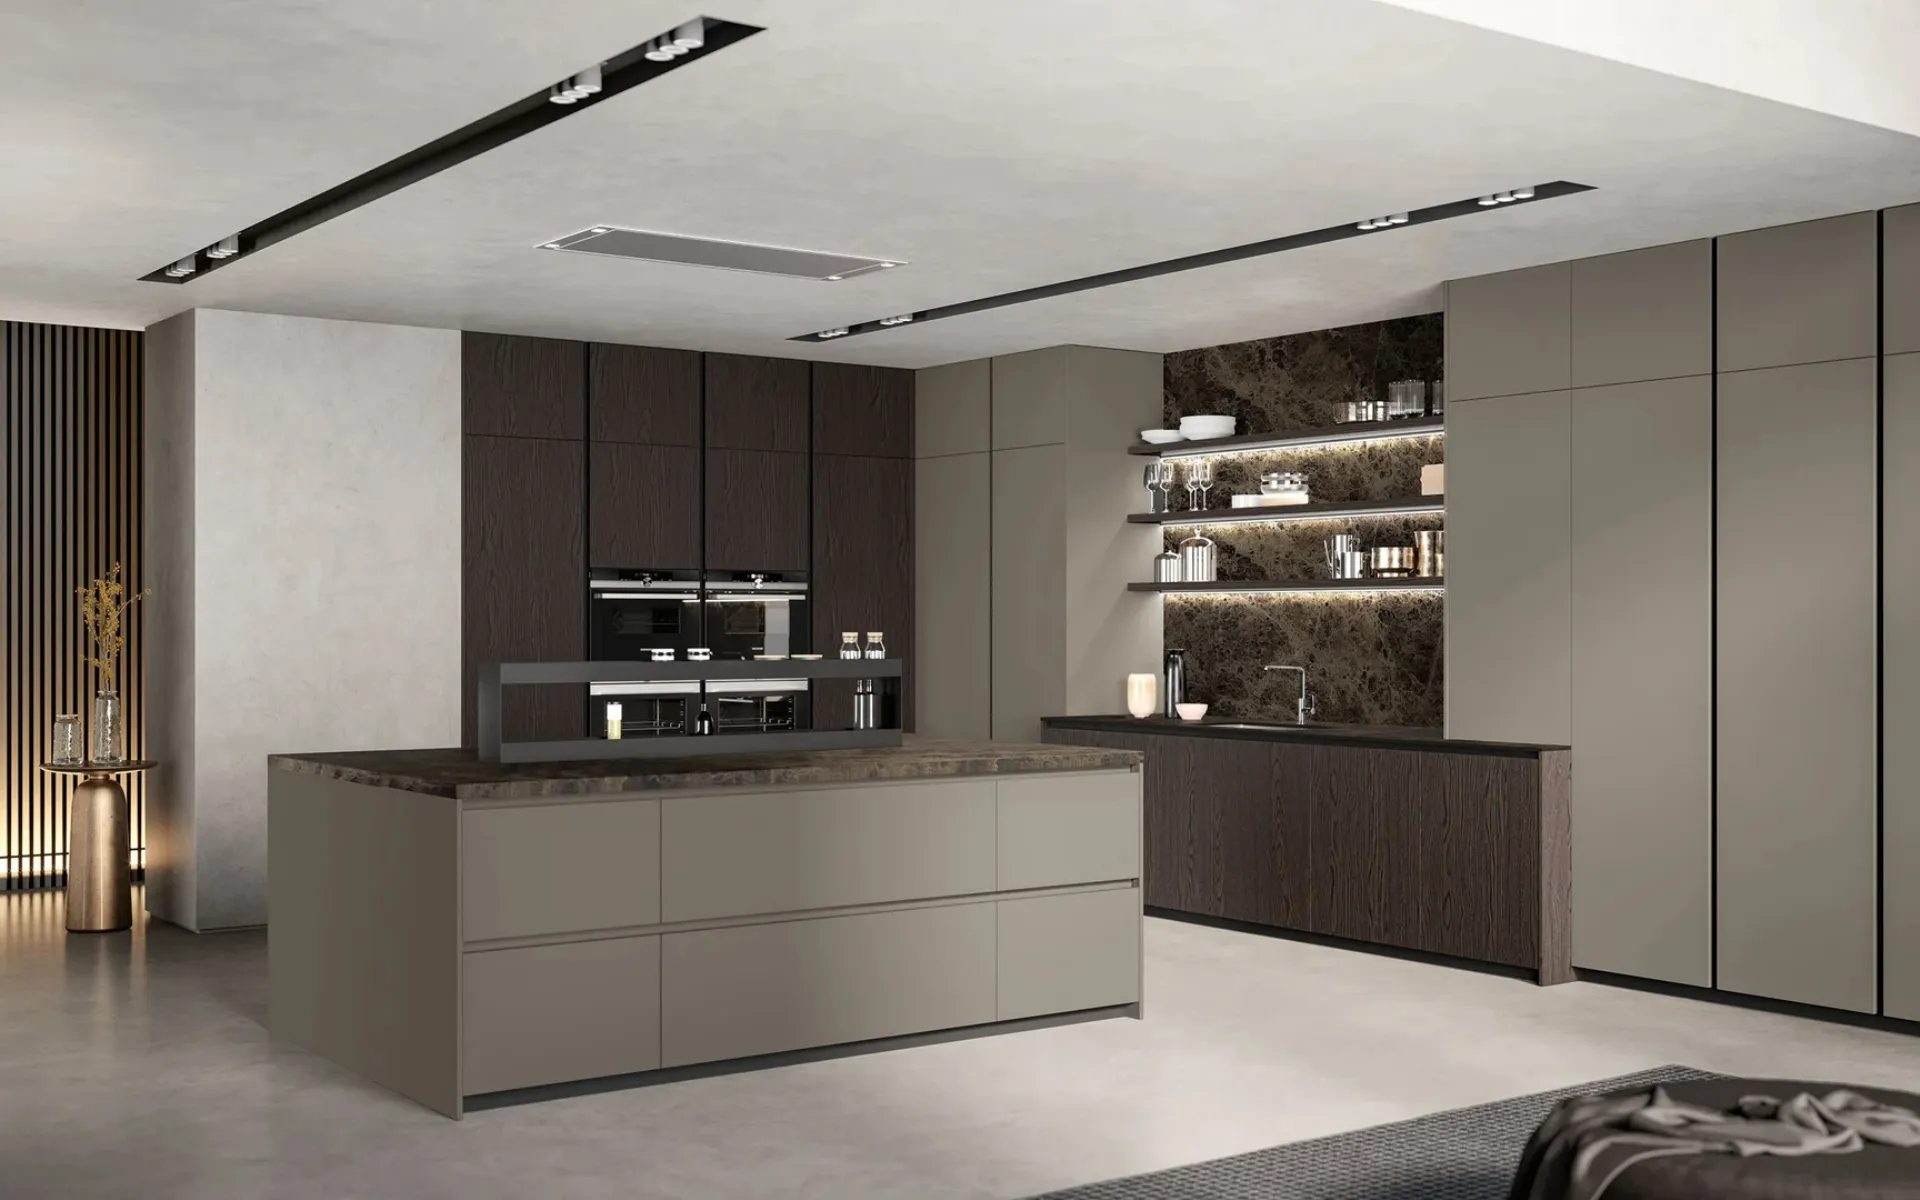 DecHome Isola per Cucina Moderna a 3 Ripiani con Piano d'Appoggio in Legno  e Truciolato 140x55x91 cm Bianco 270V00